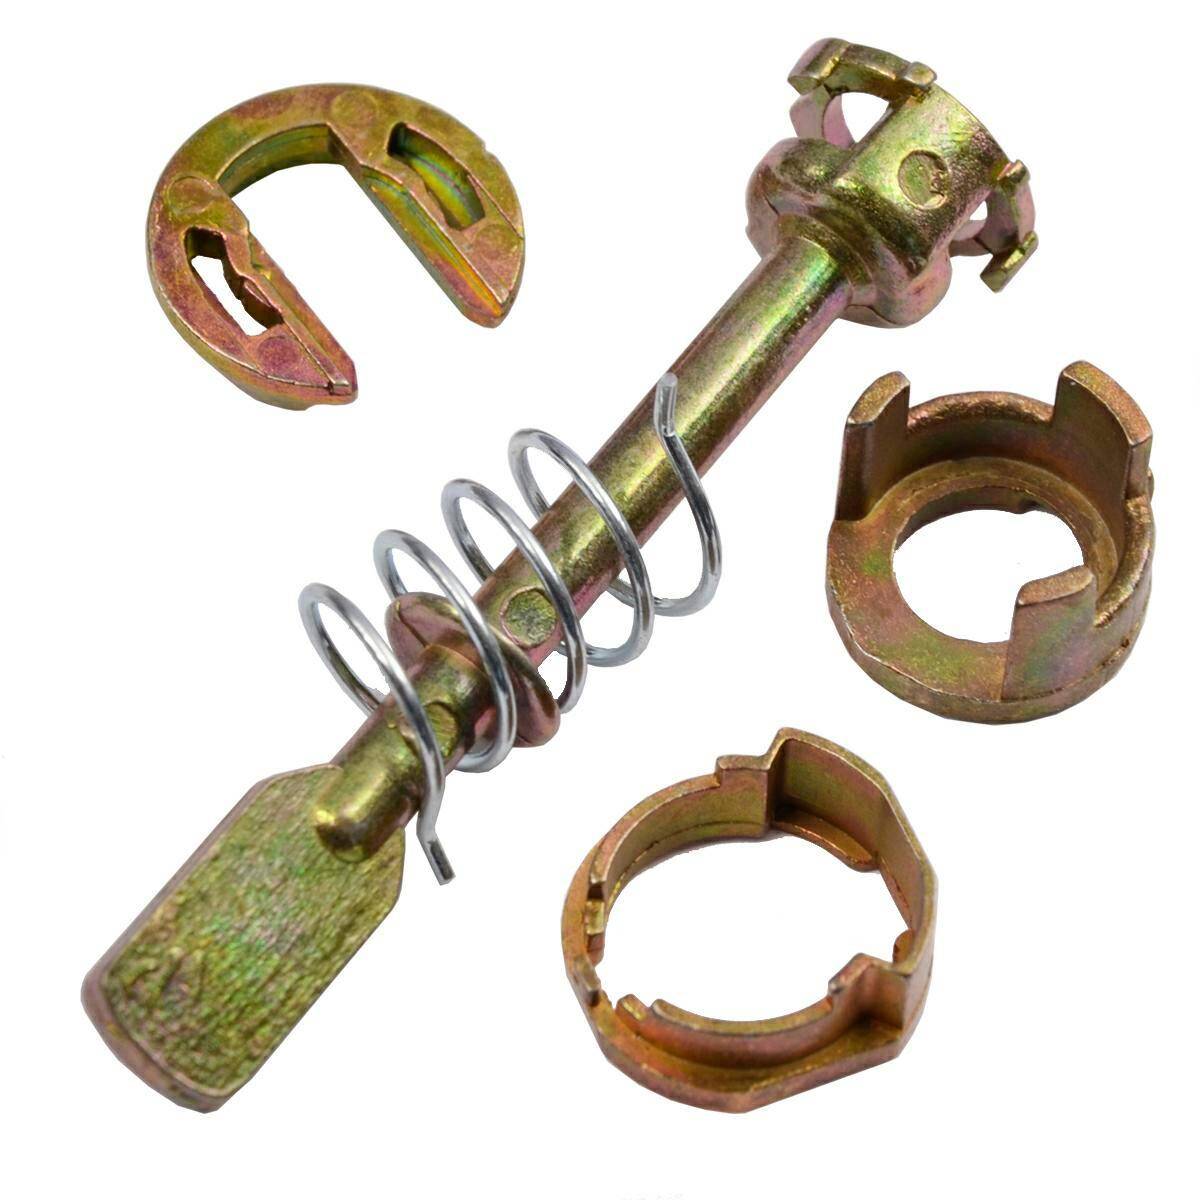 VW lock repair kit length 67mm